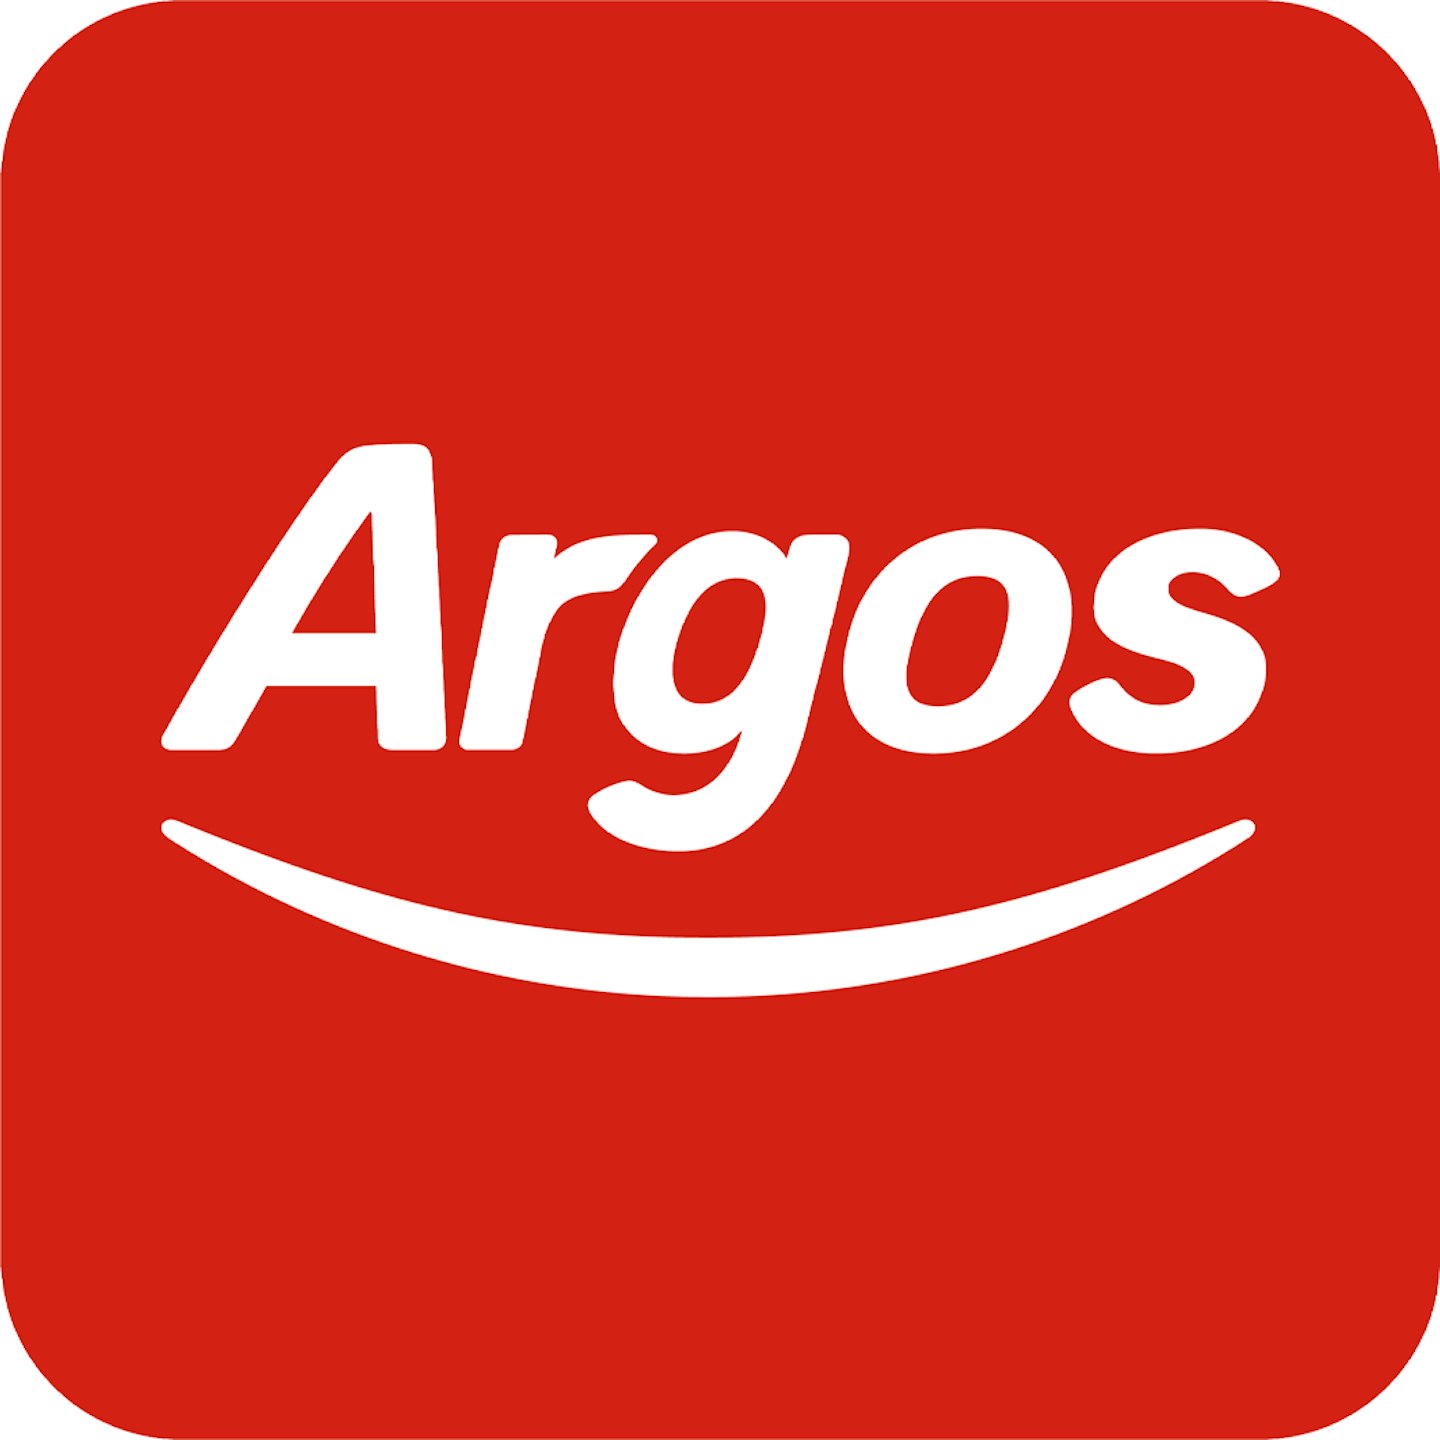 Argos logo